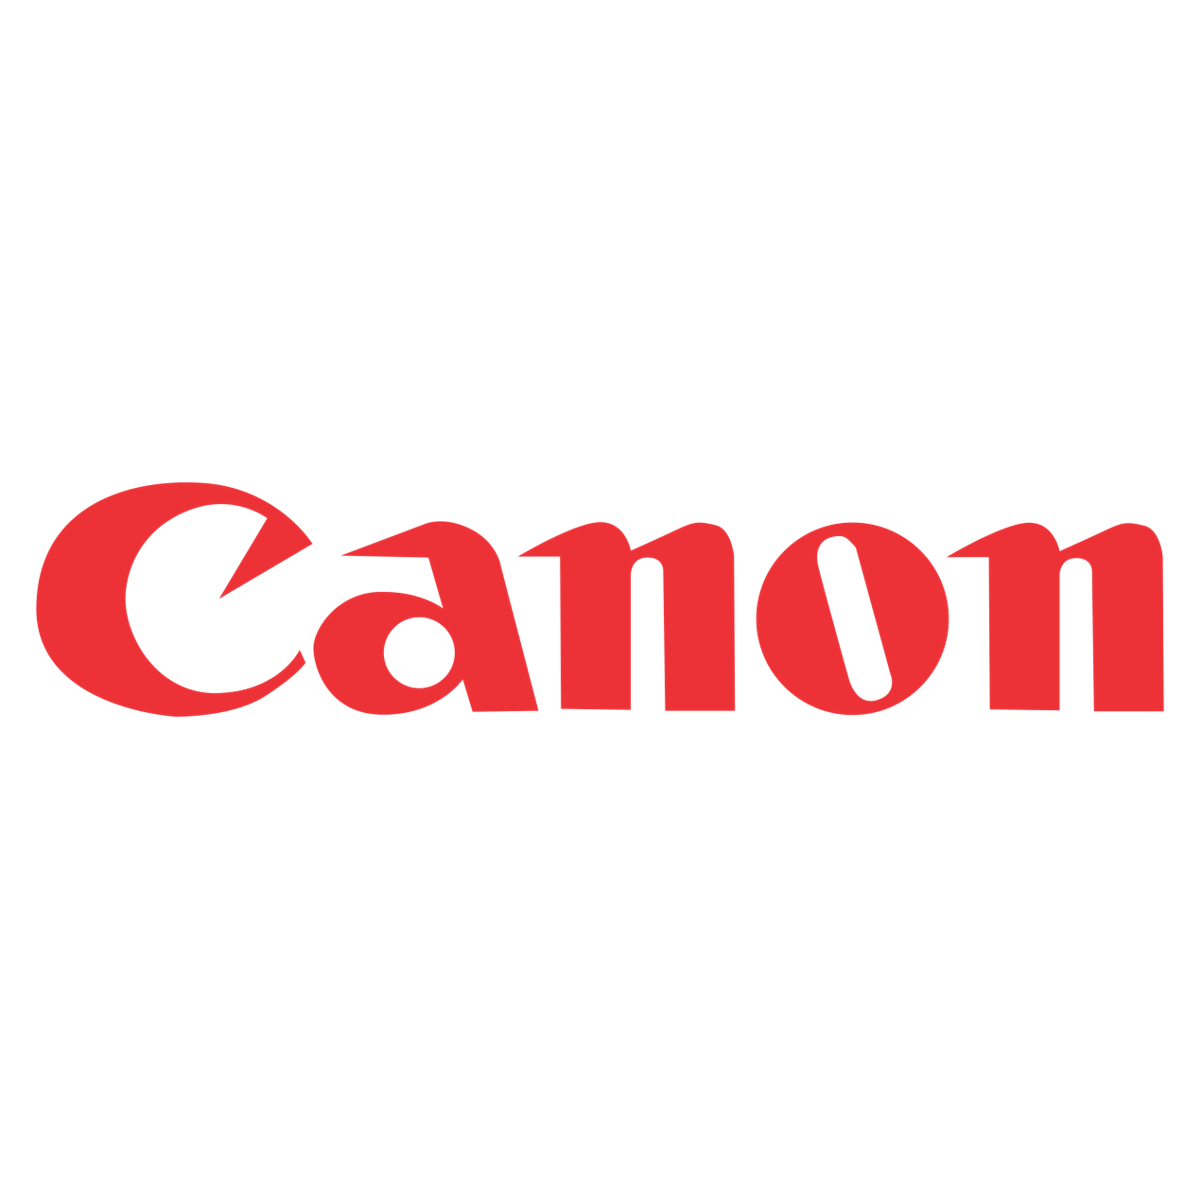 Canon DADF AV1 iR-C3520I/3525I - 100 sheet